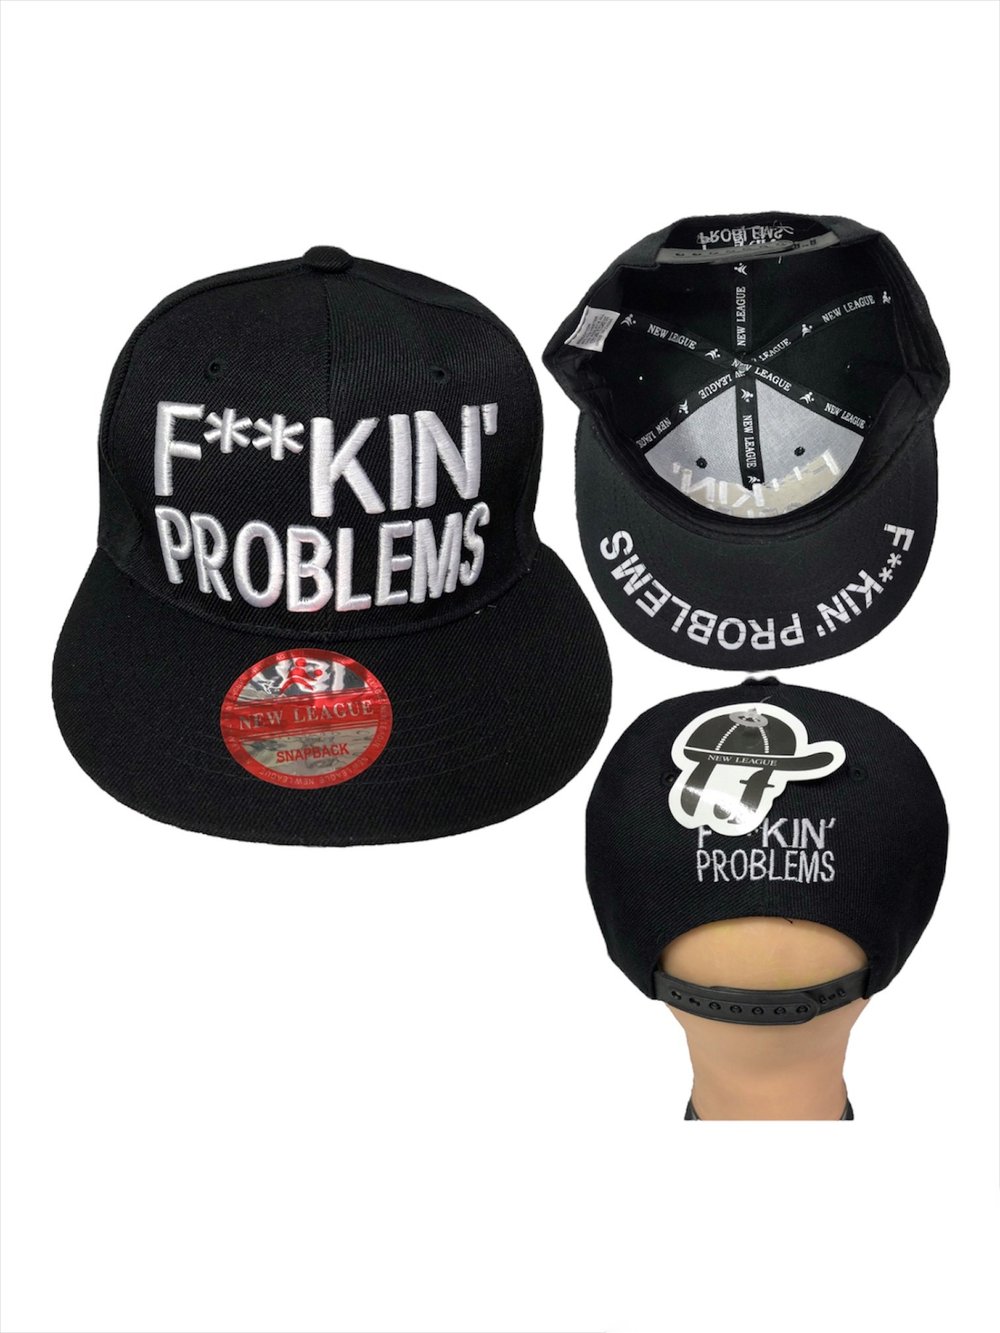 F**KIN' PROBLEMS Embroidered Adjustable Snapback for Men, Hip Hop Caps for Men